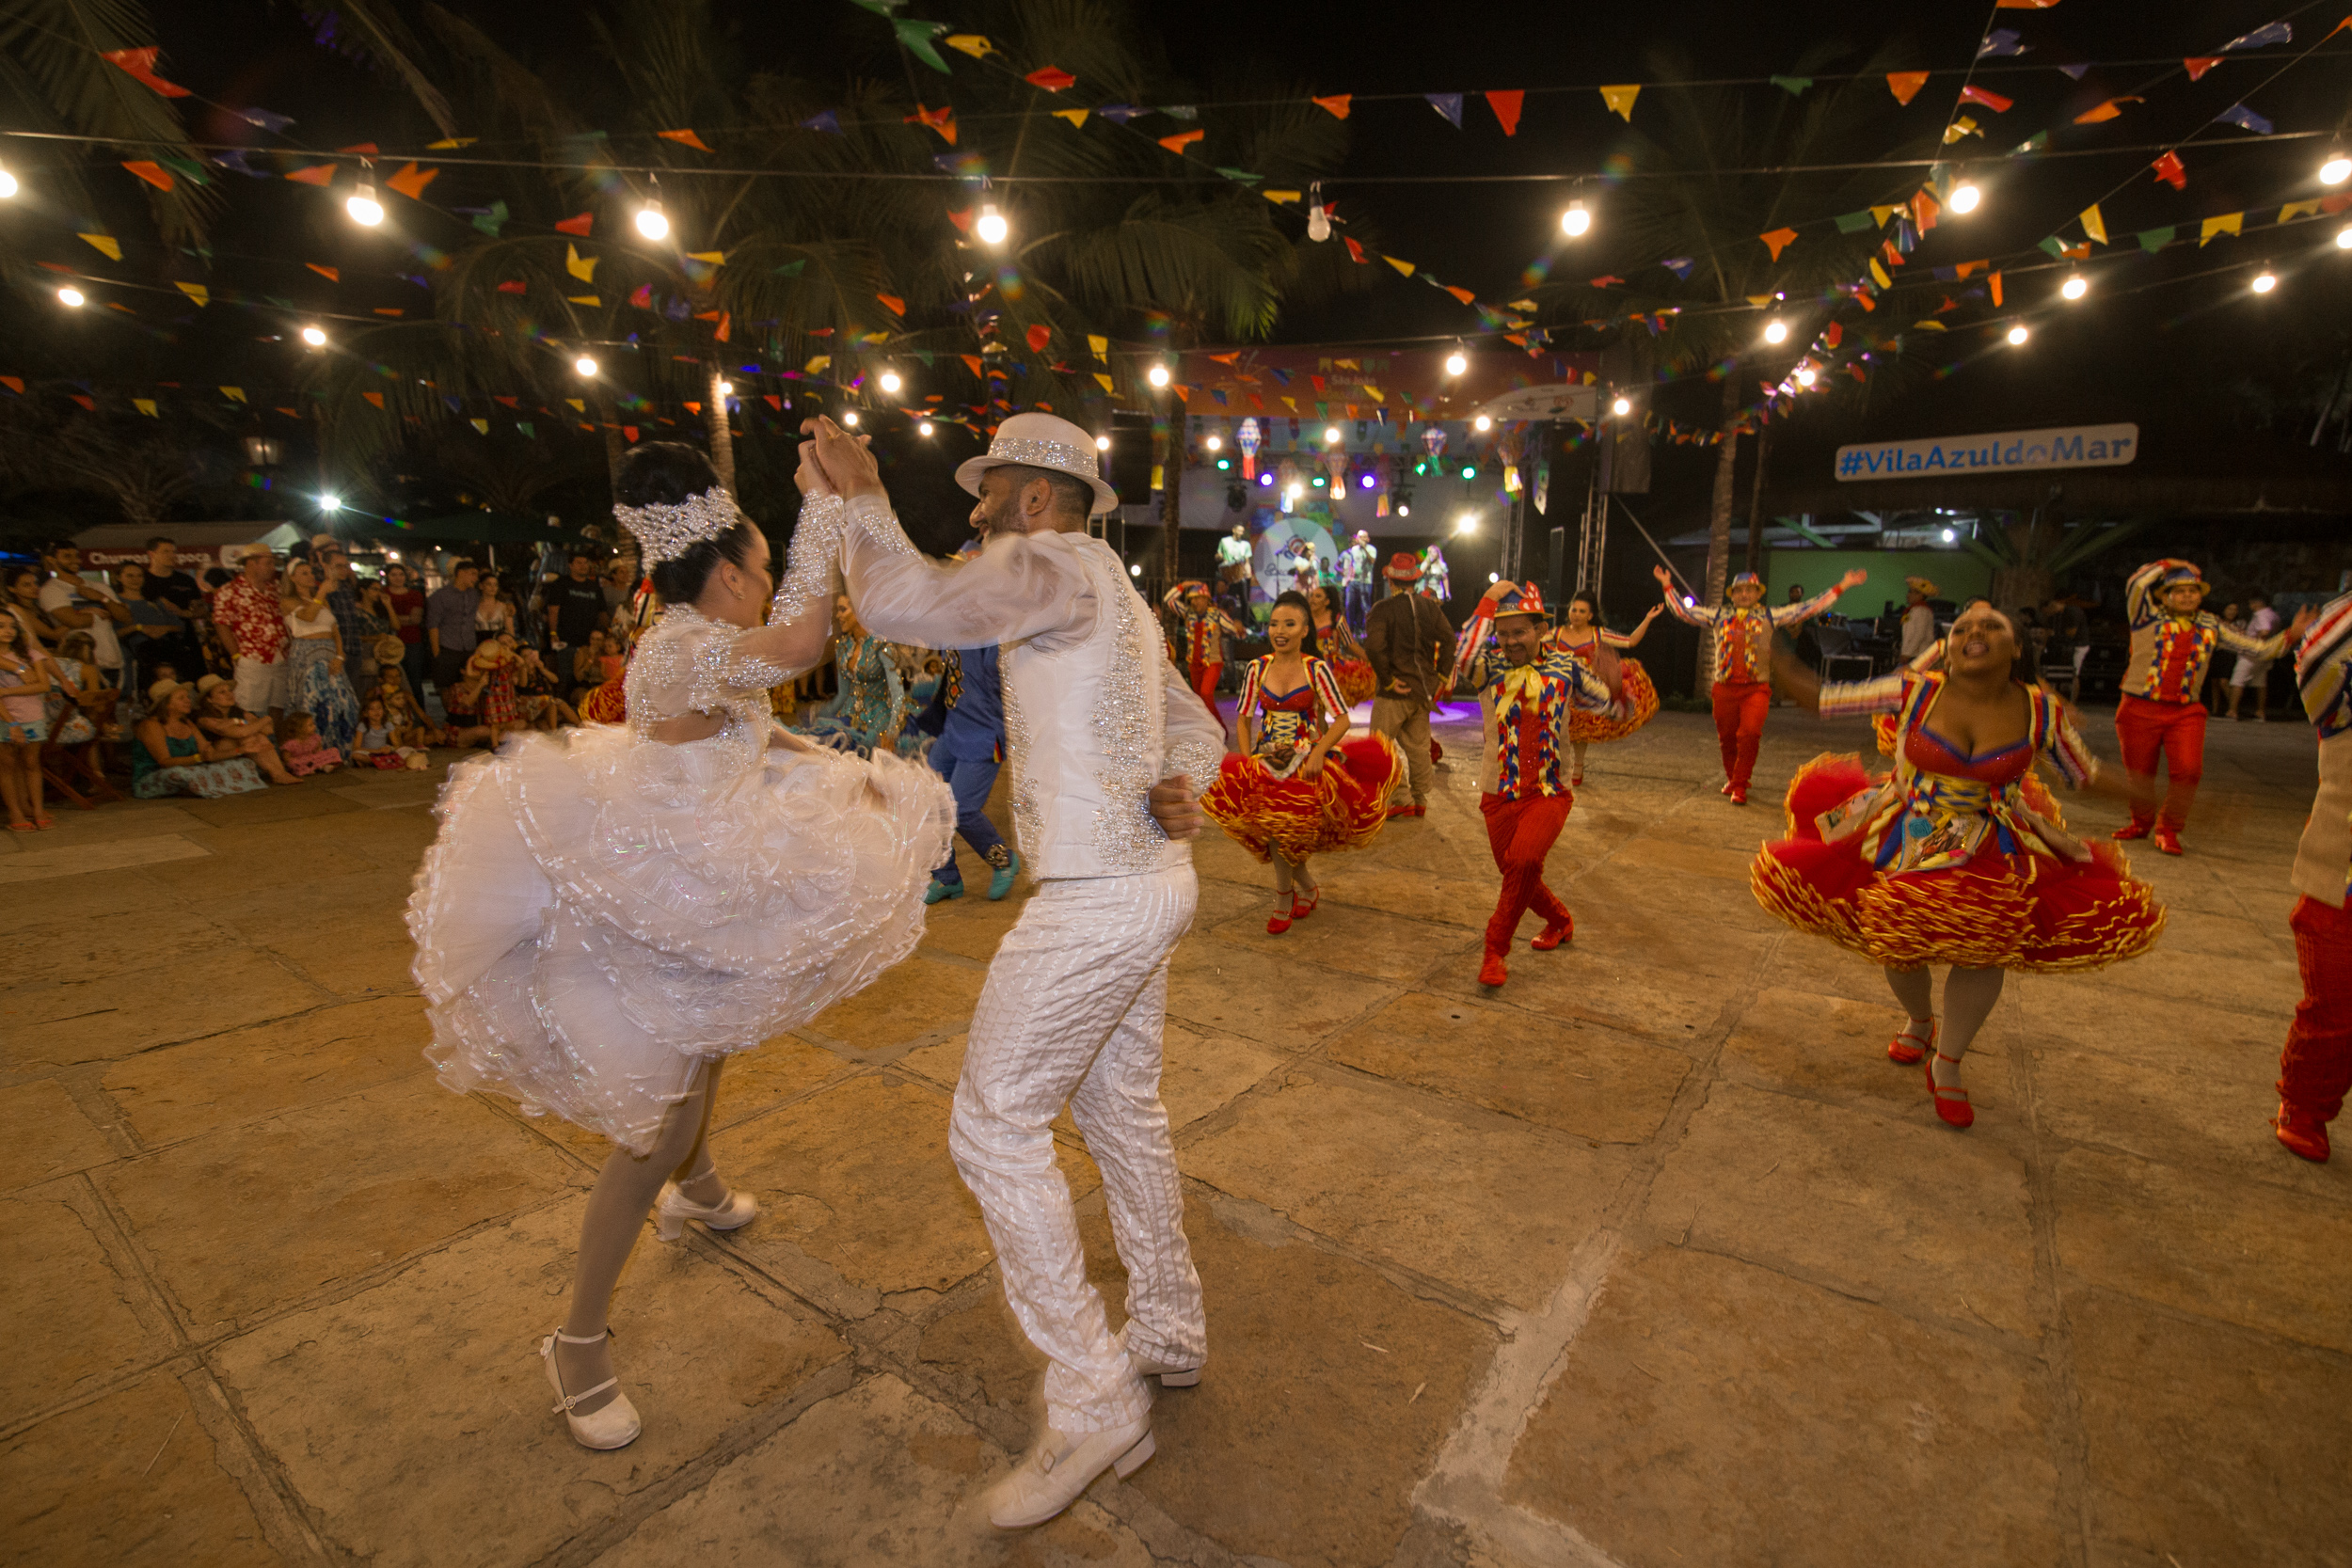 São João na Vila Azul do Mar traz programação festiva aberta ao público neste fim de semana